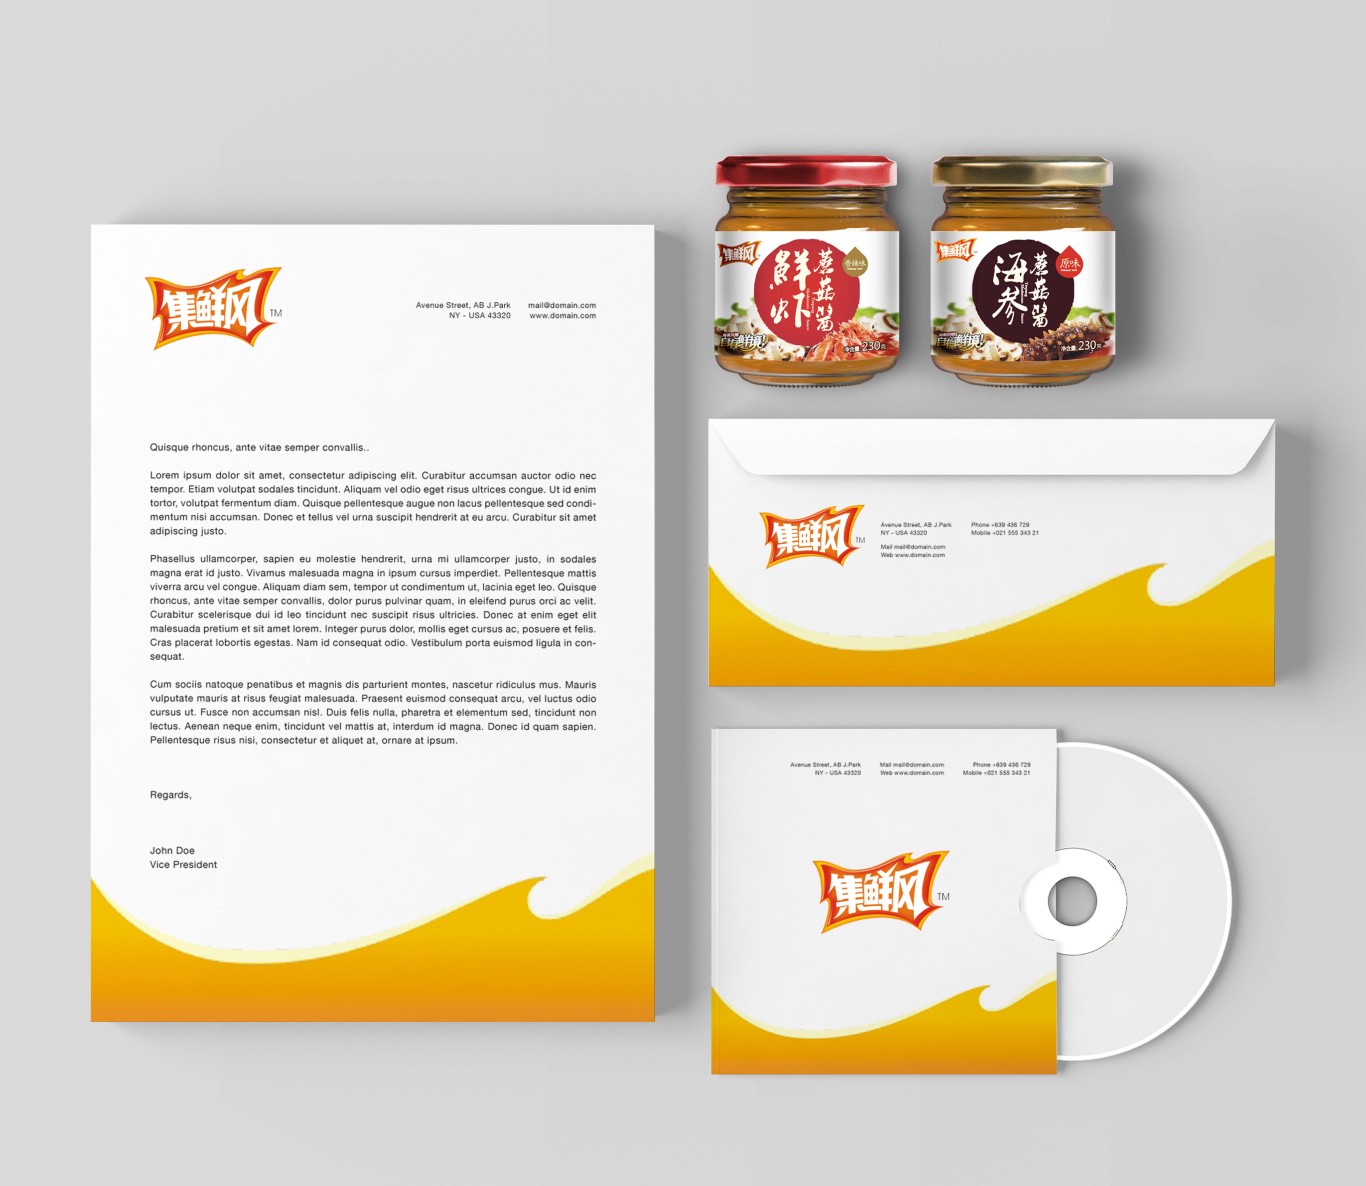 集鲜风海鲜蘑菇酱品牌形象设计+包装设计+推广物料设计图3